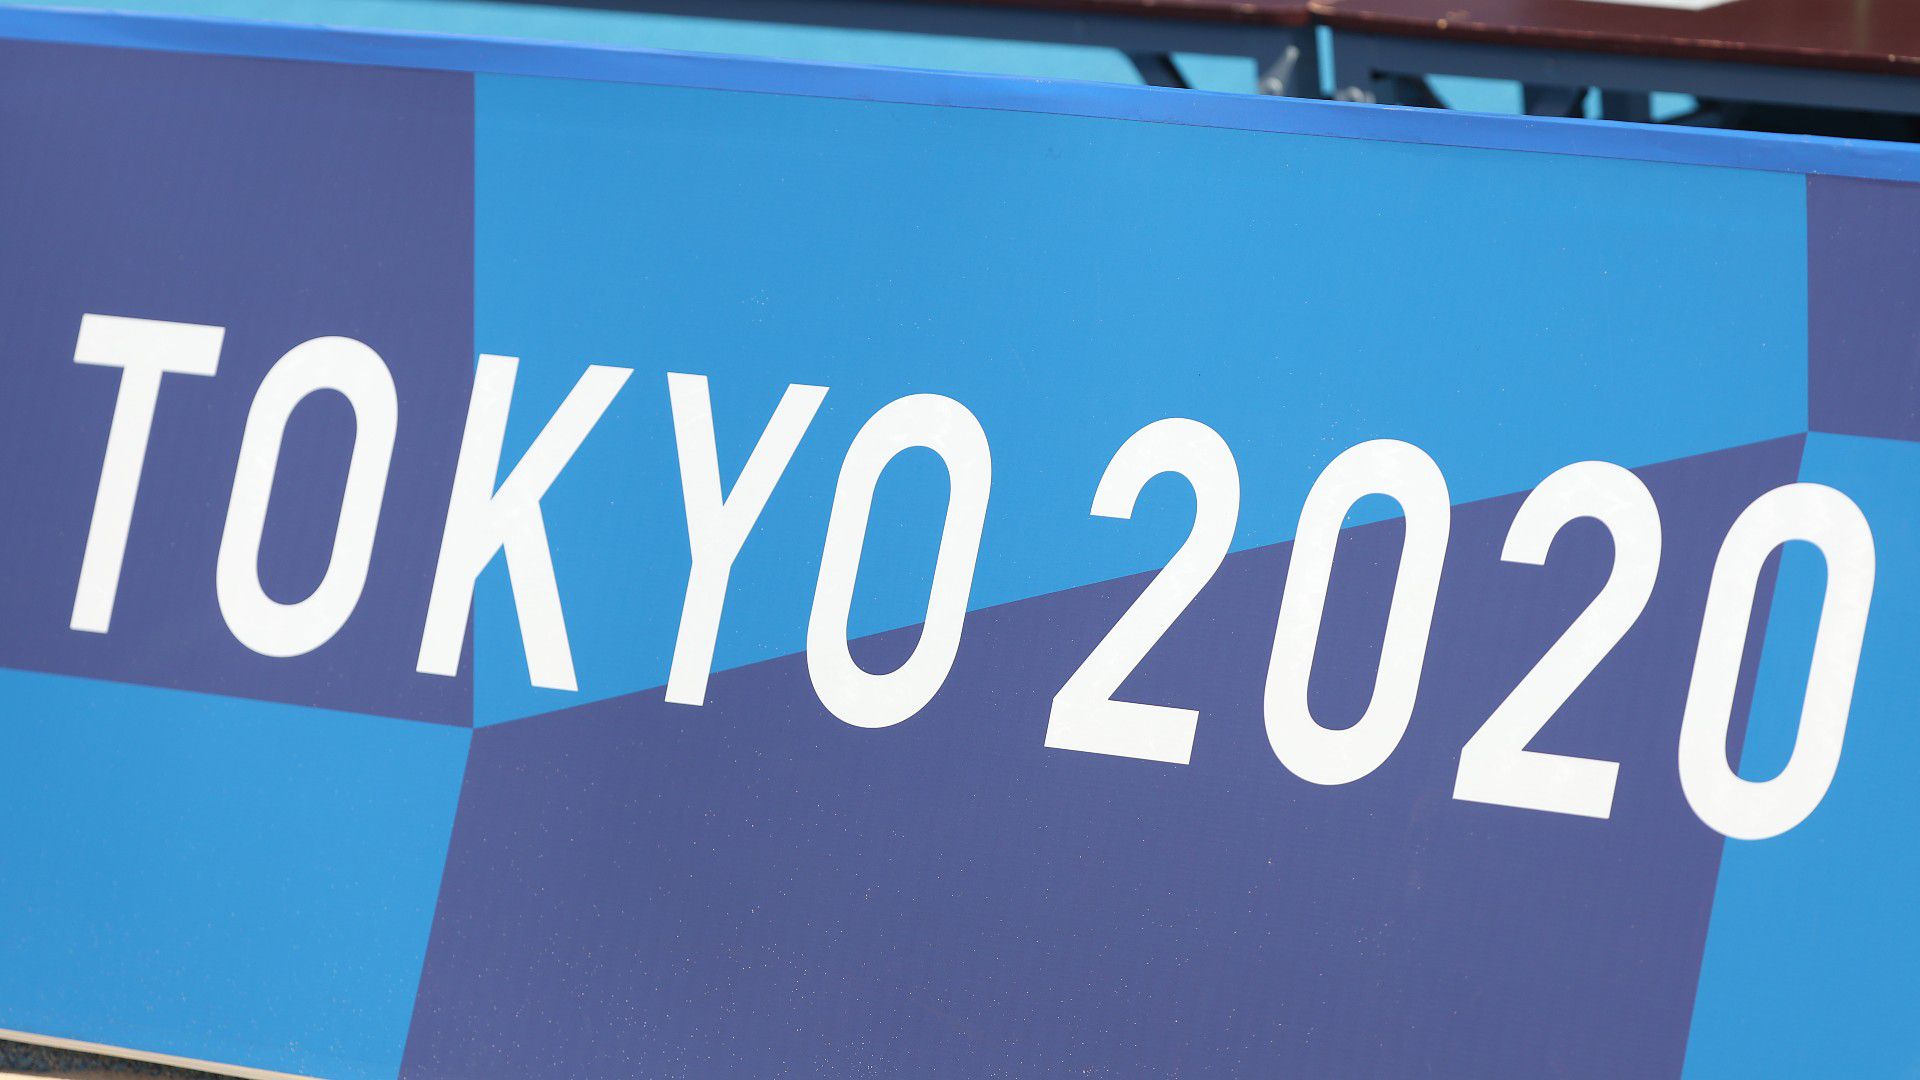 A közöltnél jóval többe került a tokiói olimpia megrendezése